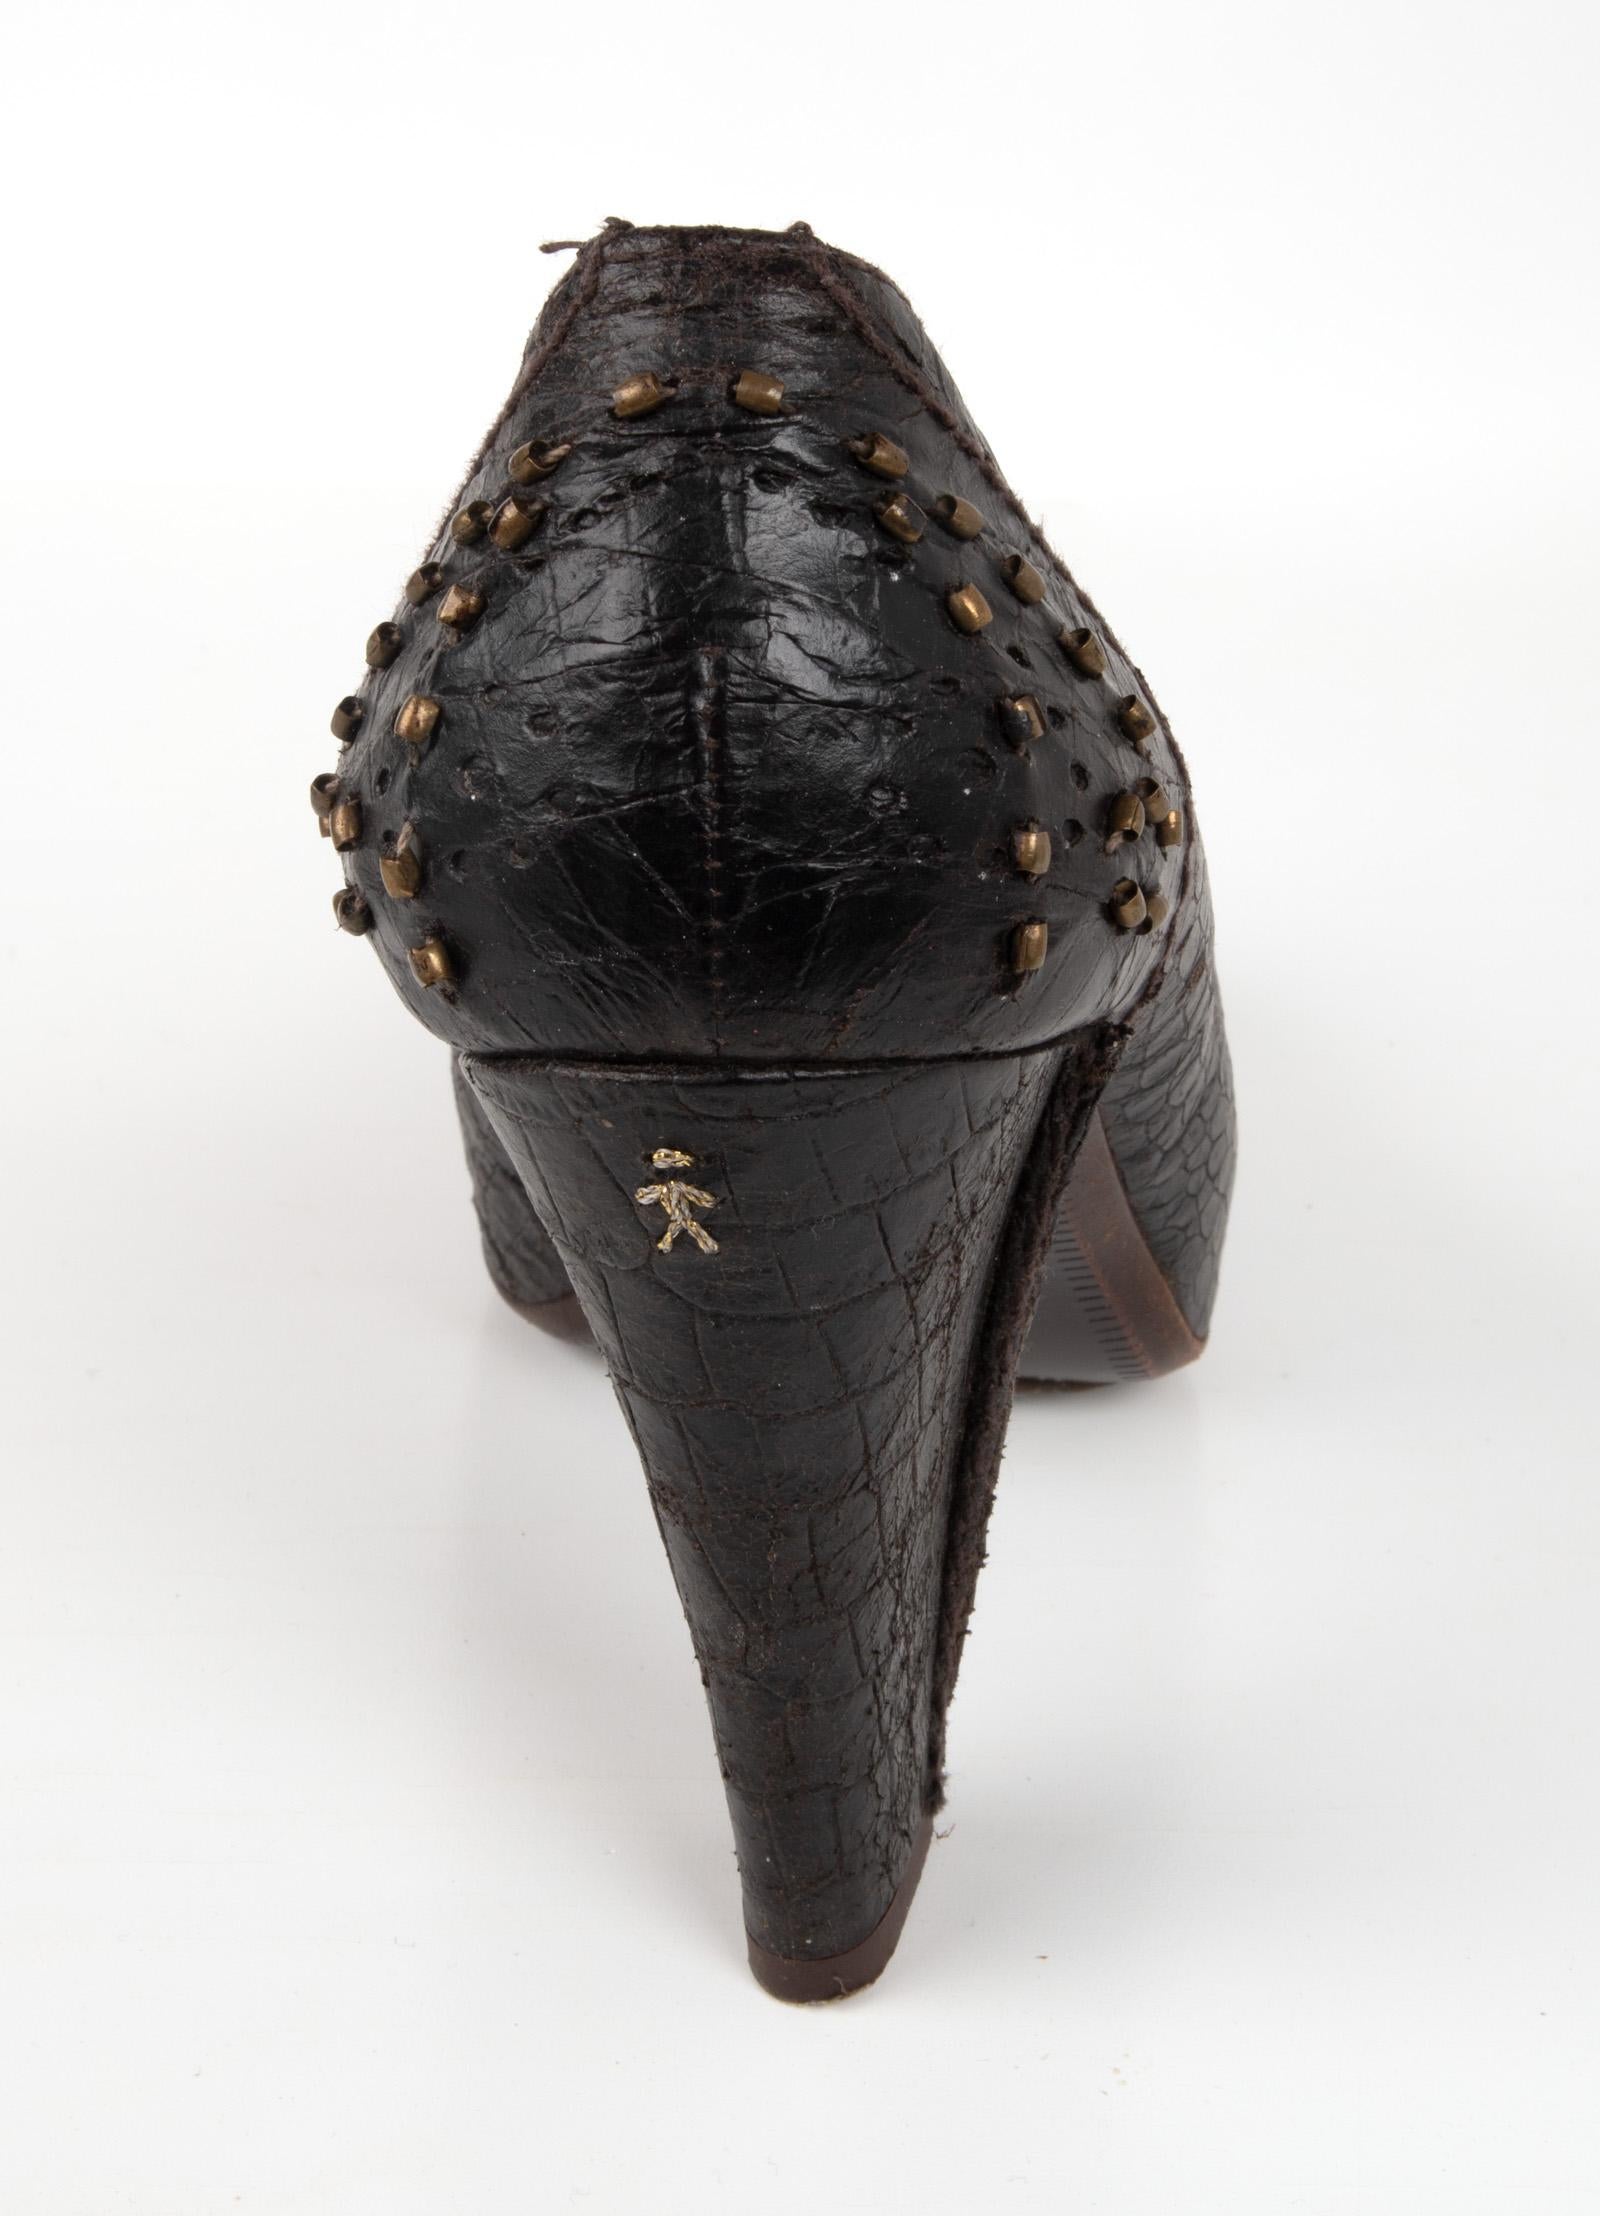 Women's Henry Beguelin Shoe Faux Croc Distressed Leather Pump Brass Hdwre 39 / 9 Mint